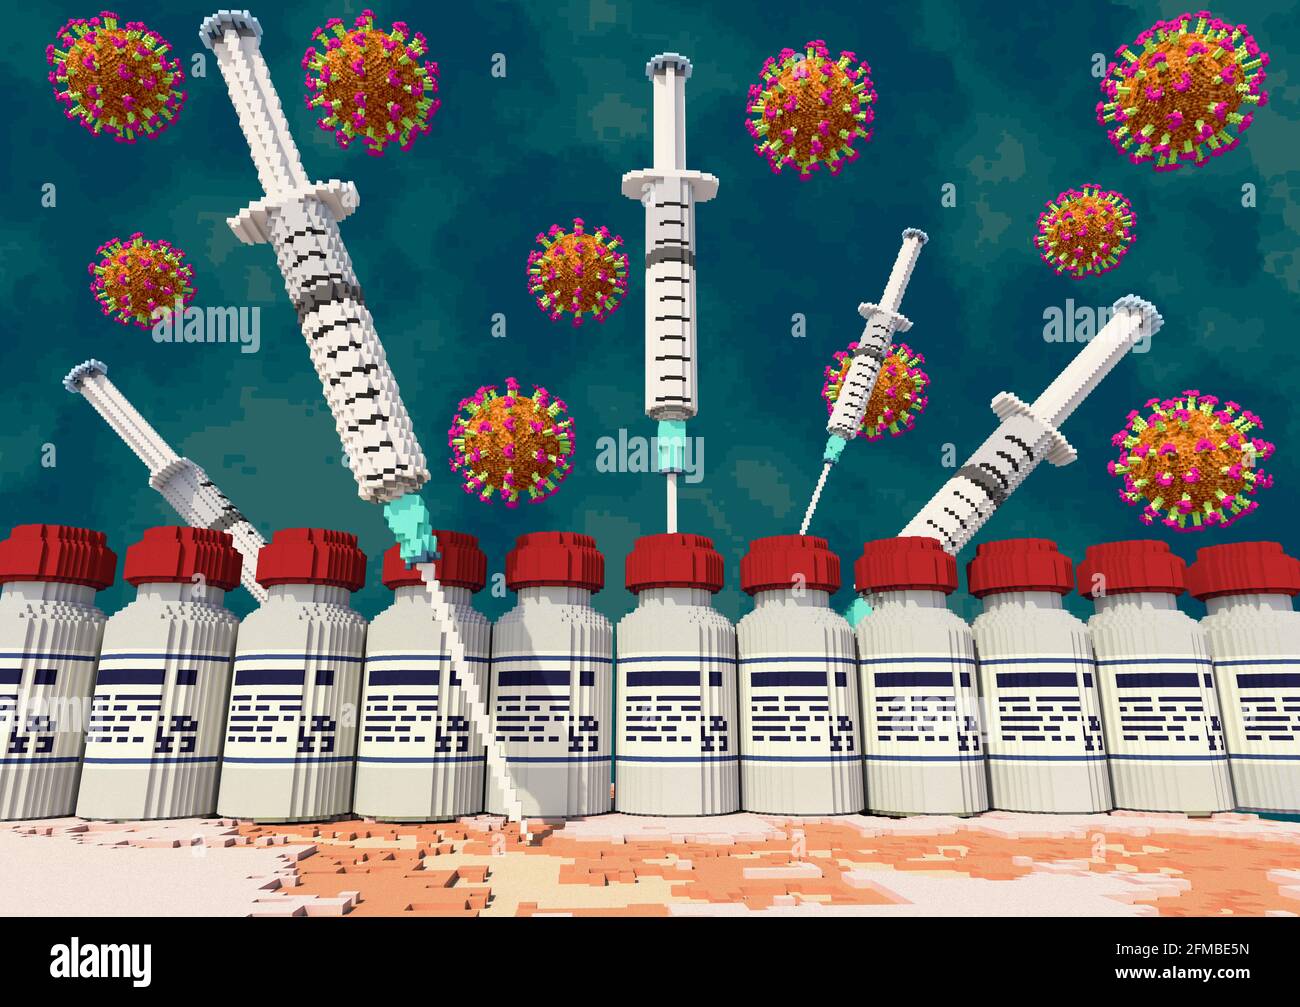 Siringhe di vaccino, bicchieri di vaccino e virus della corona fluttuante di fronte a uno sfondo scuro e minaccioso, in stile grafico voxel Foto Stock